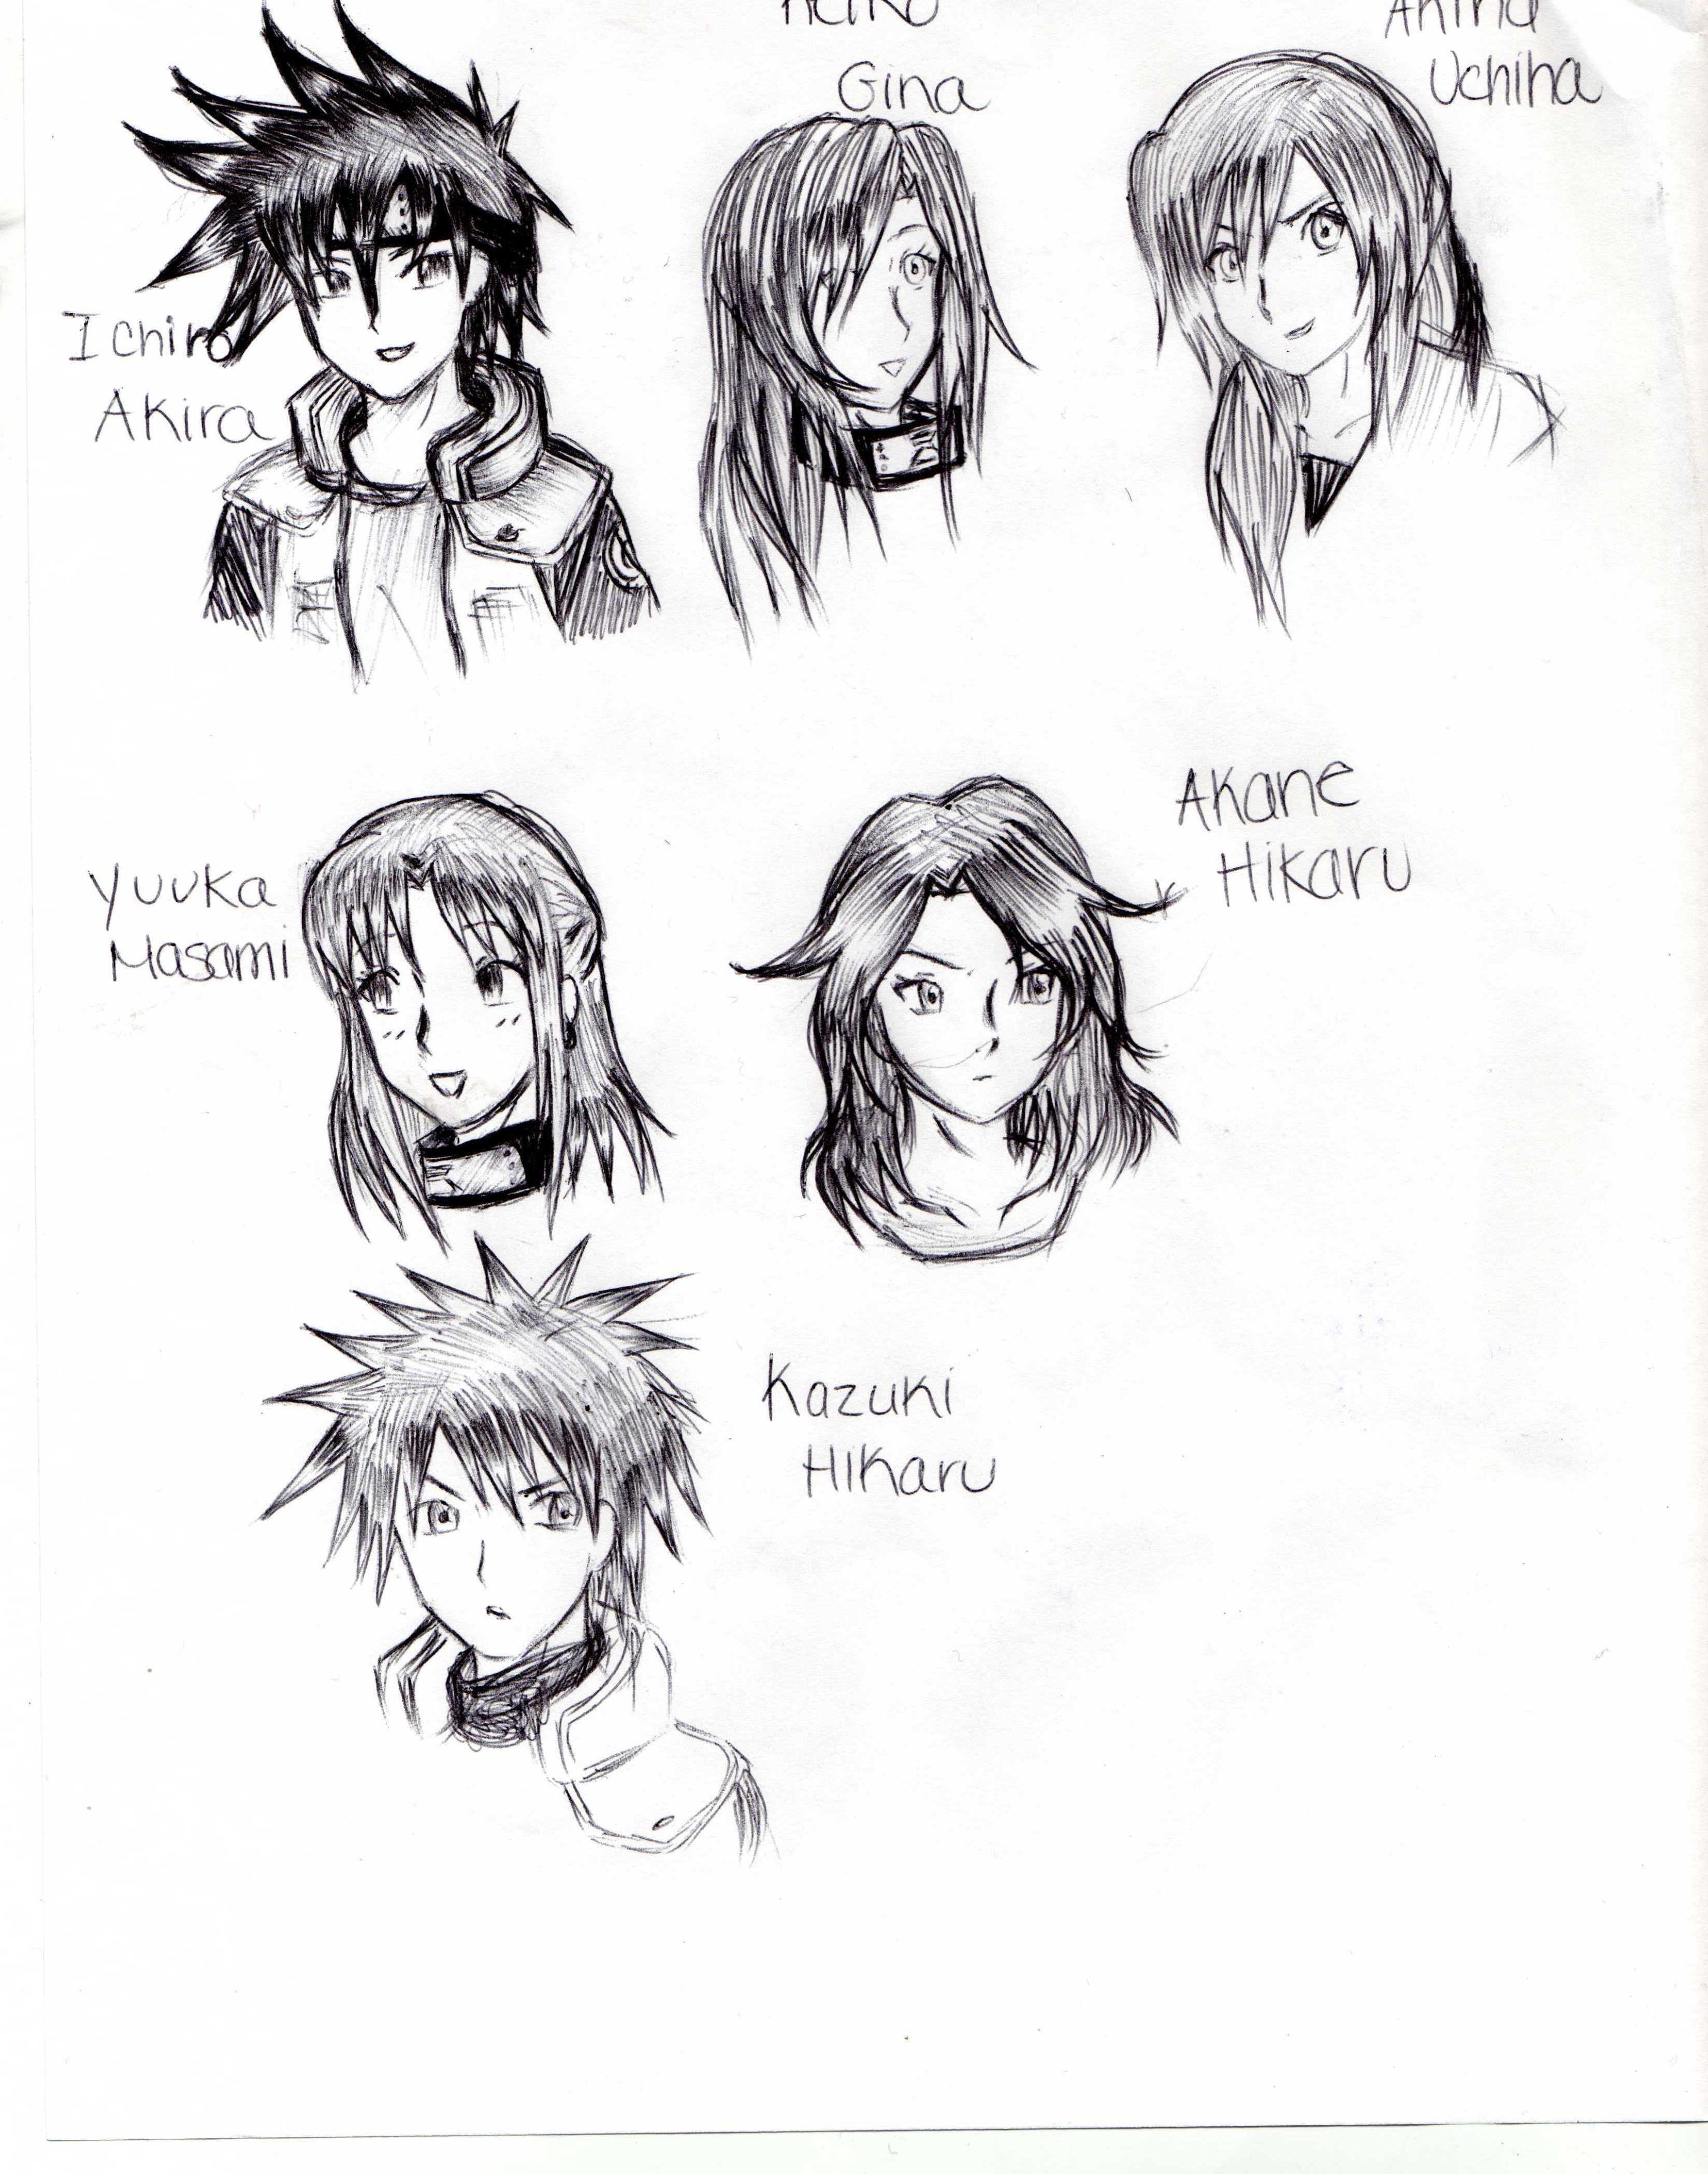 Ichiro,Keiko,Akina, Yuuka,Akane, and Kazuki by DarknessEternity1027